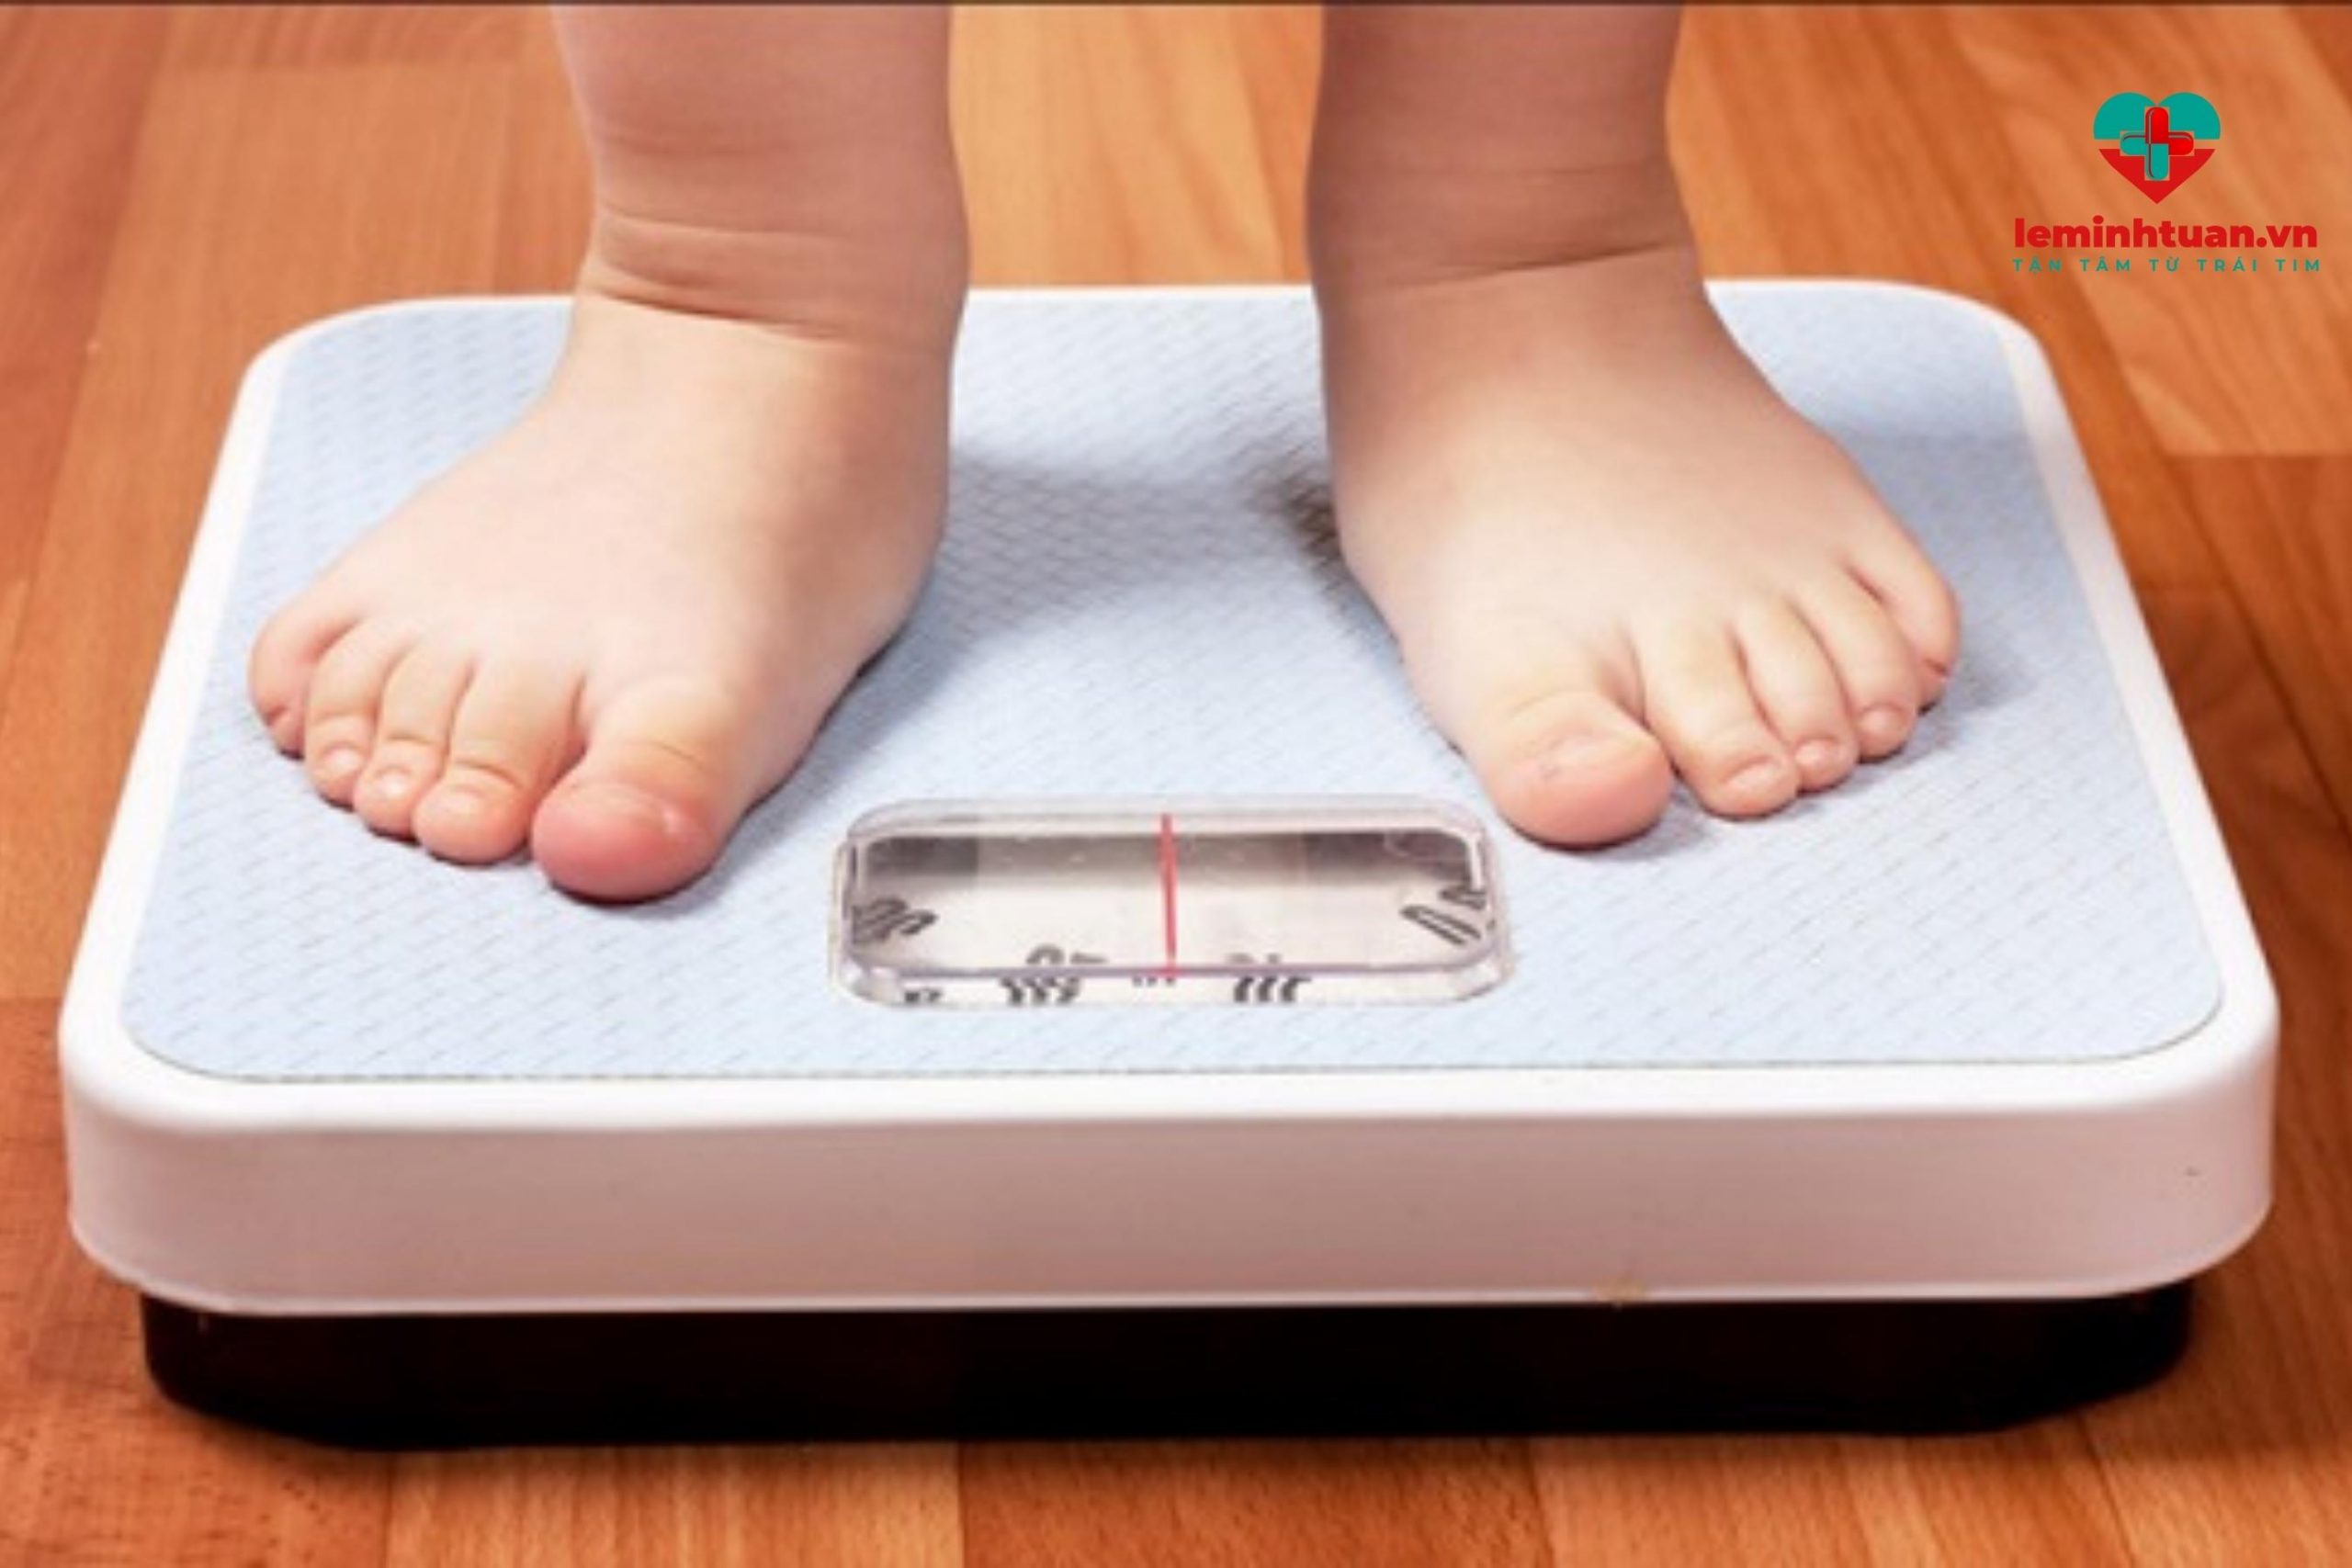 Trẻ sụt cân không rõ nguyên nhân mẹ nhận biết như thế nào?